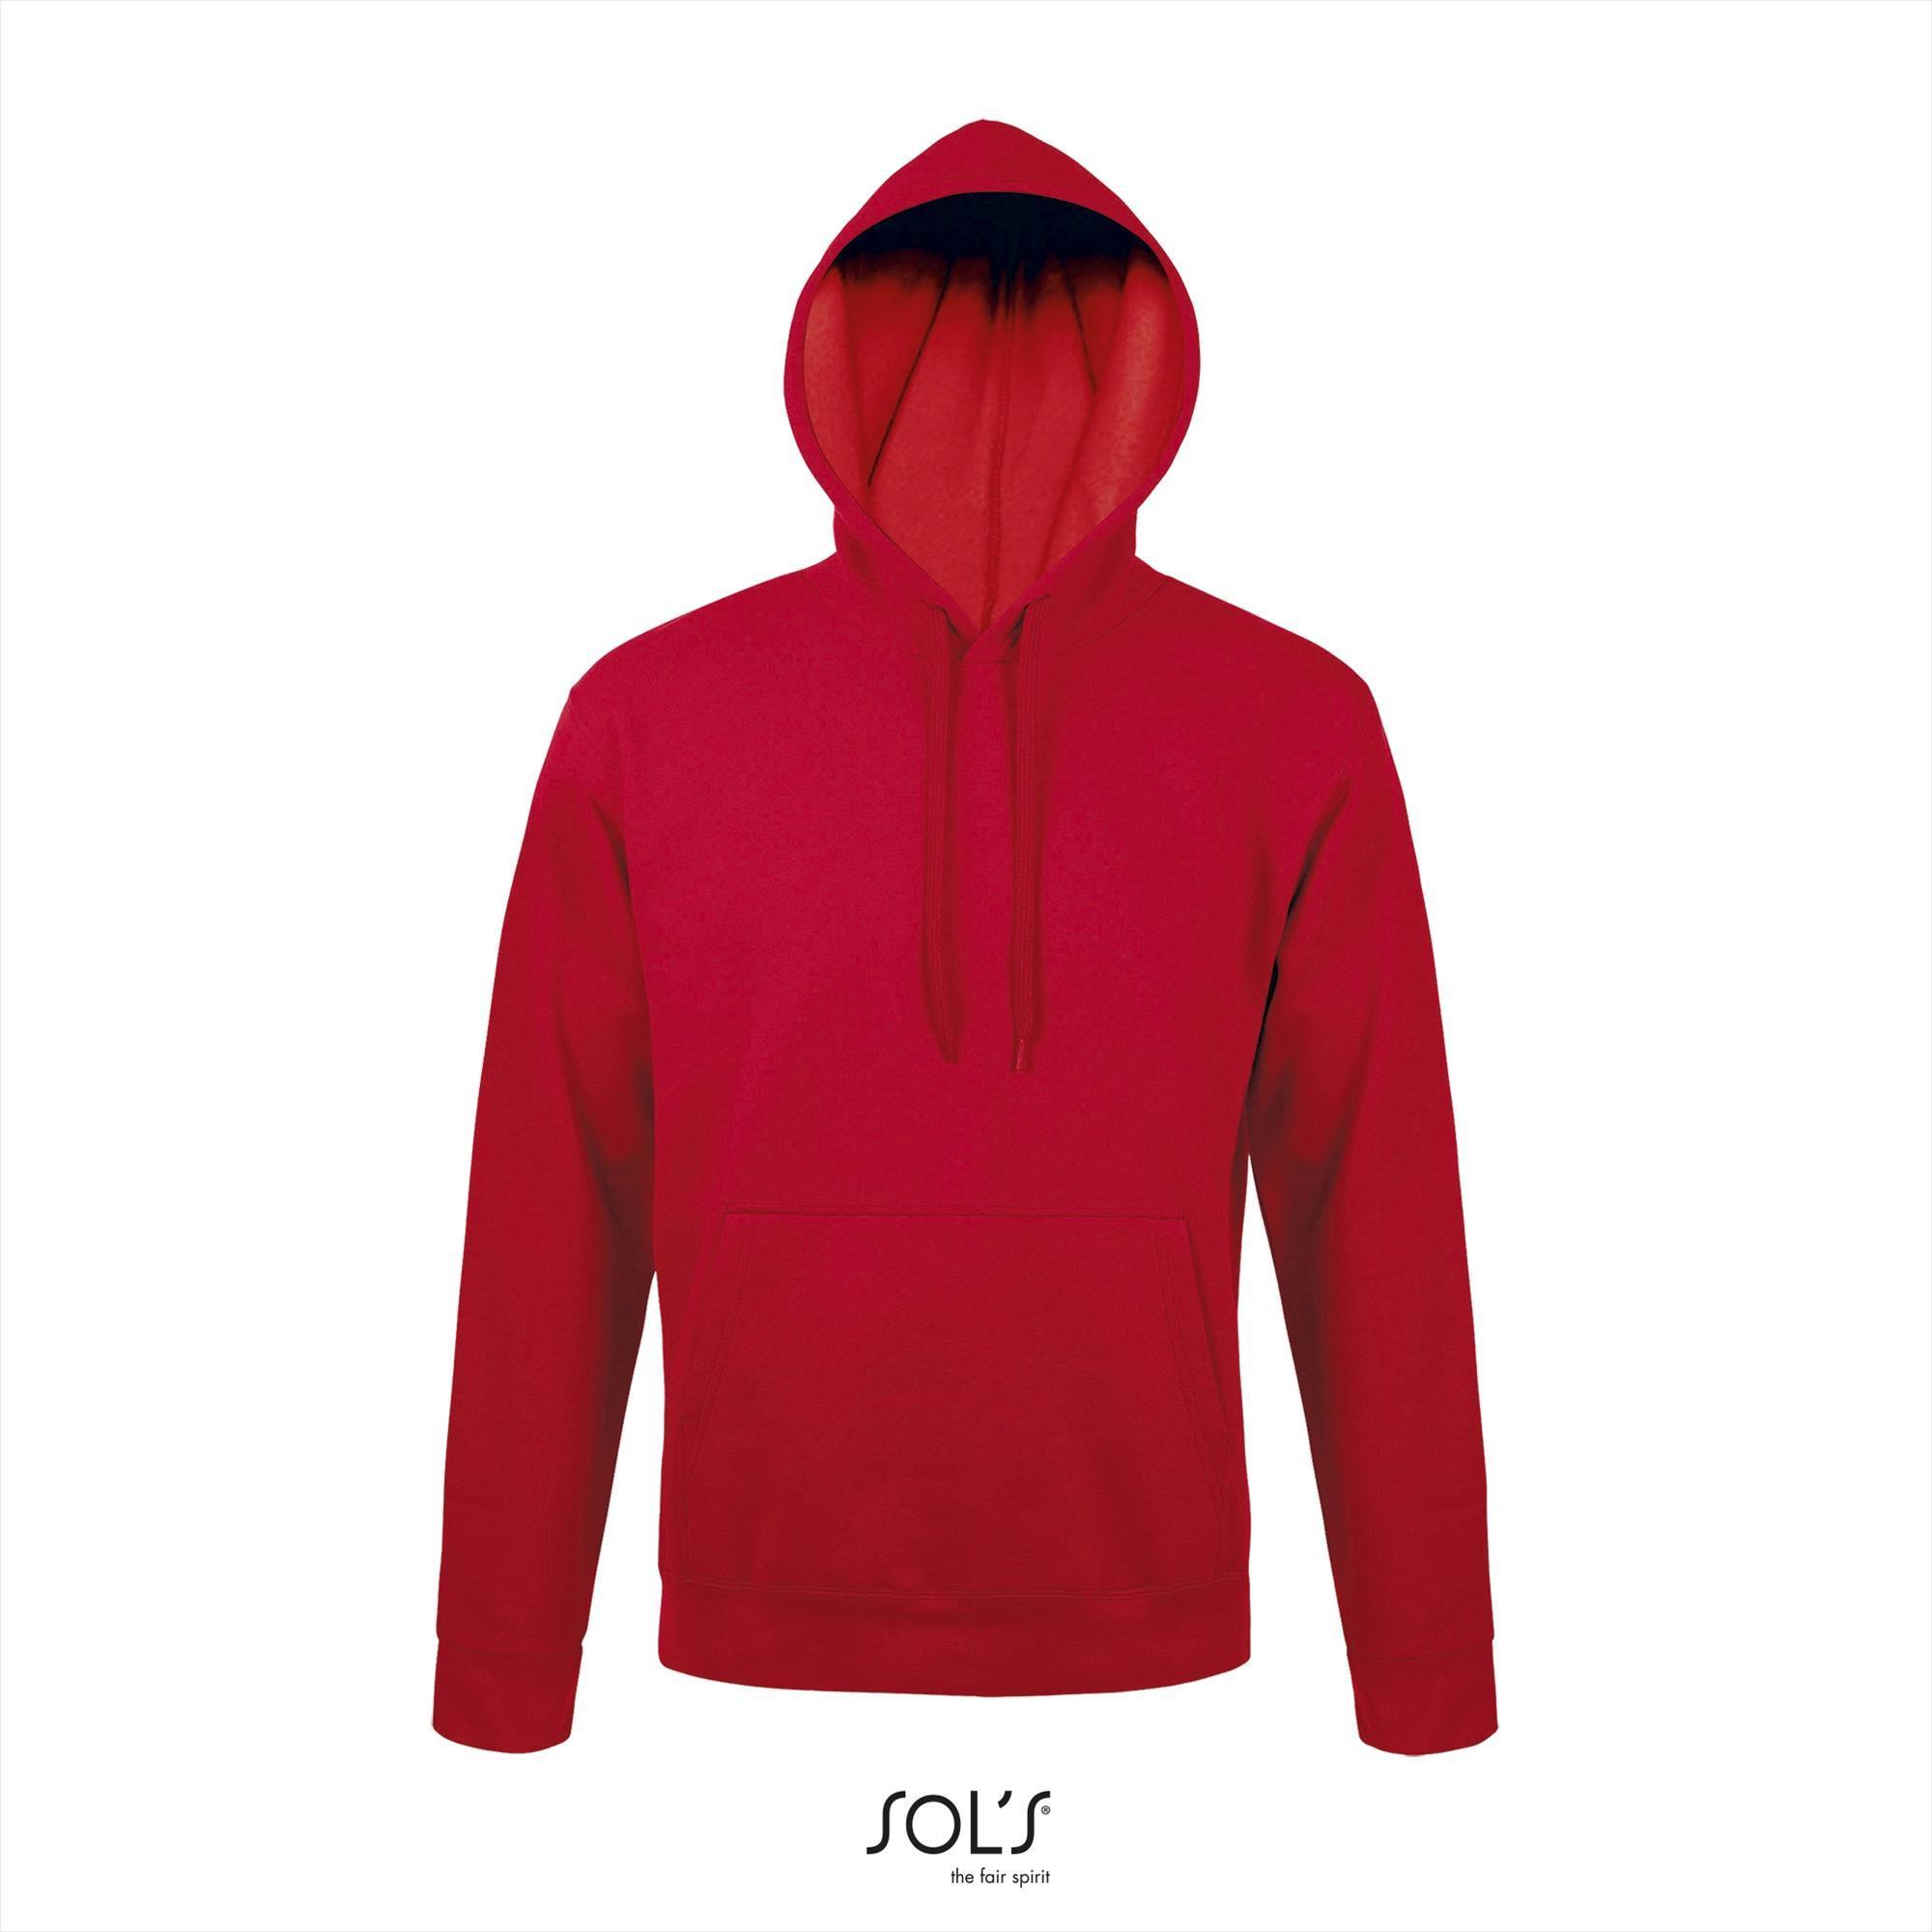 Rode hooded sweater voor mannen unisex rood